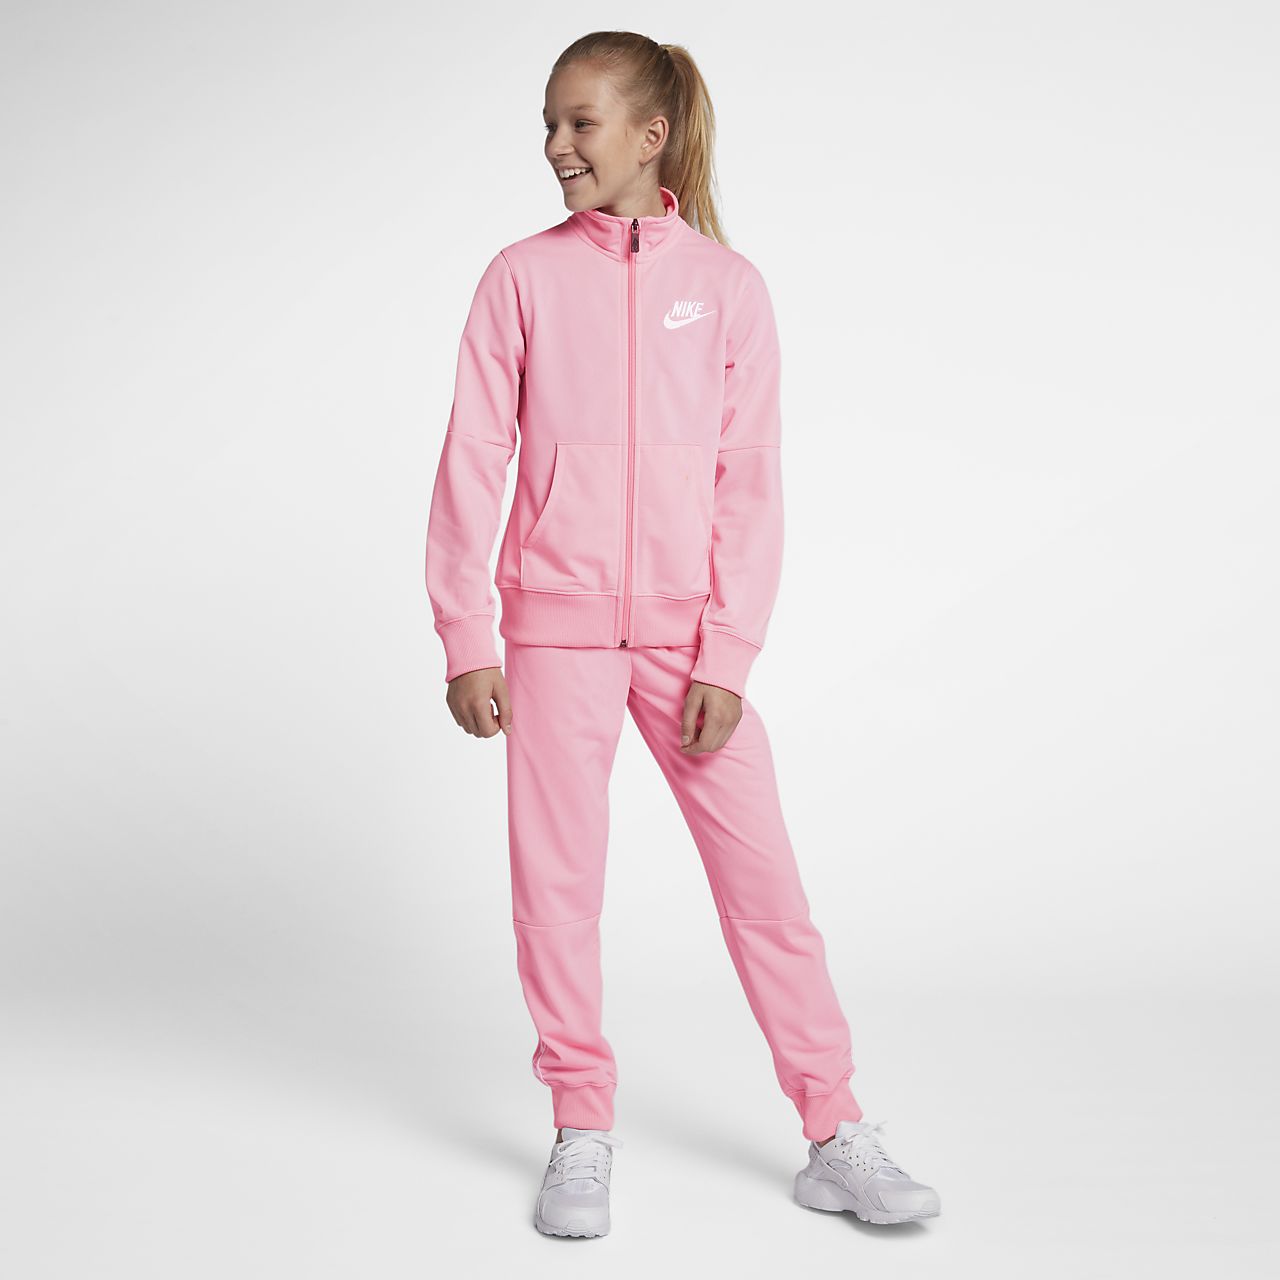 Костюм детские розовые. Костюм найк детский track Suite розовый. Puma костюм женский розовый флисовый. Спортивный костюм найк розовый. Костюм спортивный для девочки найк розовый.